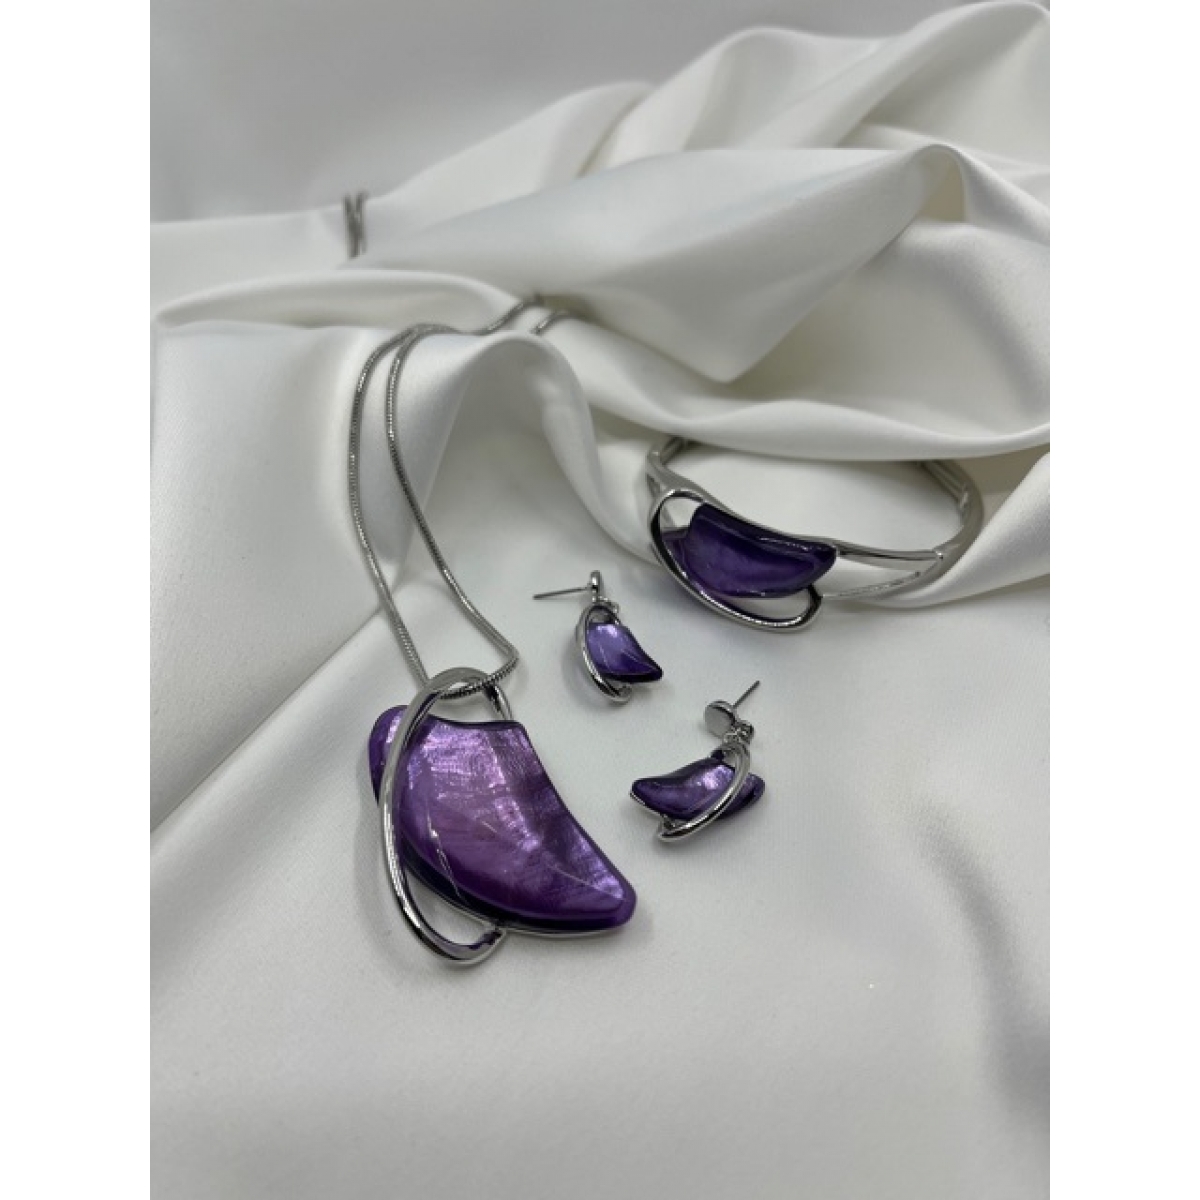 Súprava strieborná náhrdelníka , náušníc a náramkov zdobená s príveskom fialovej farby